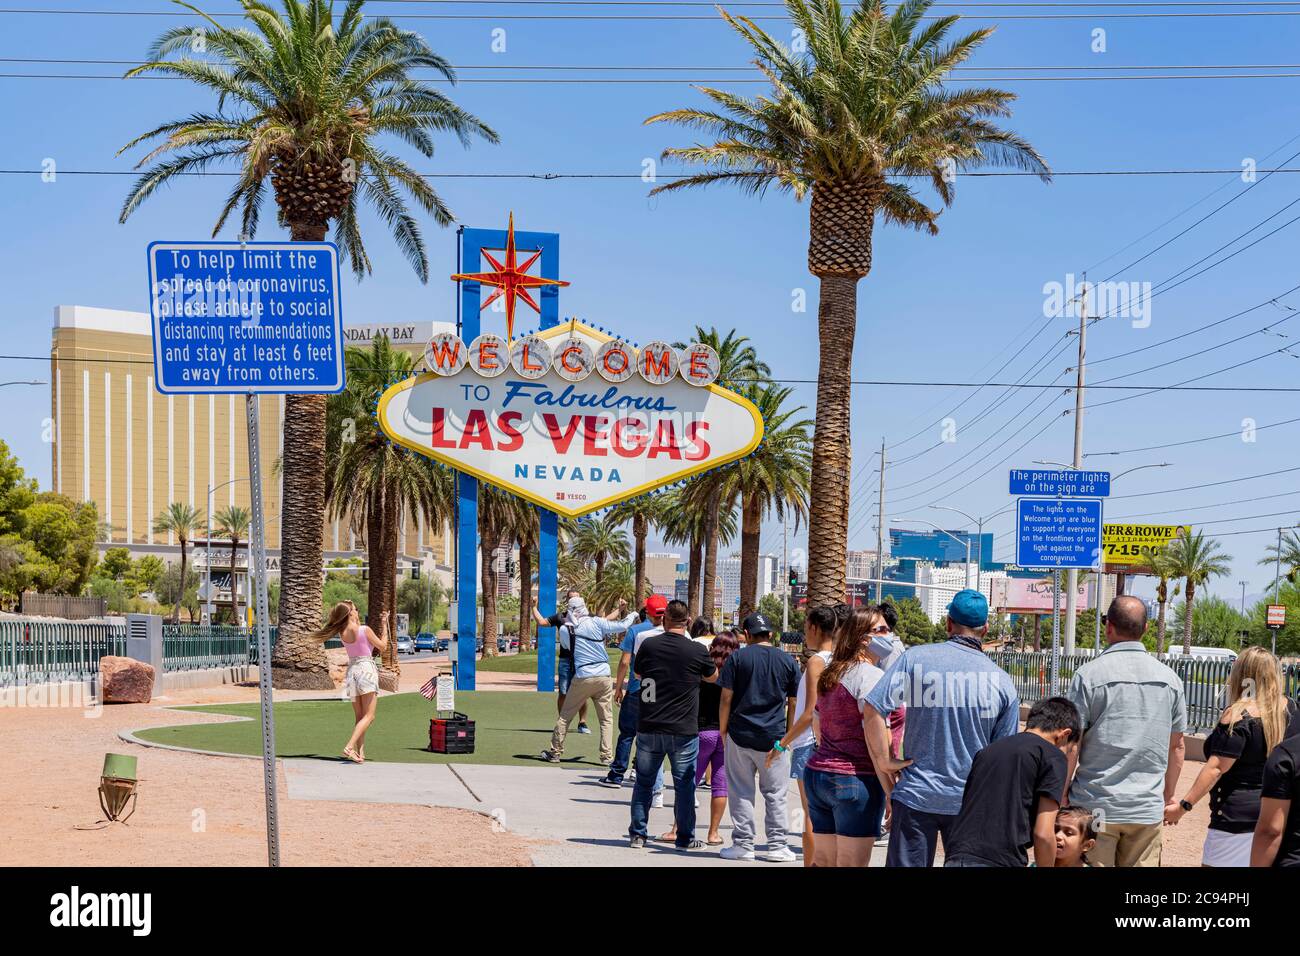 Las Vegas, 25. JUL 2020 - viele Menschen stehen Schlange, um das  "Willkommen in fabelhaften Las Vegas"-Zeichen zu fotografieren  Stockfotografie - Alamy